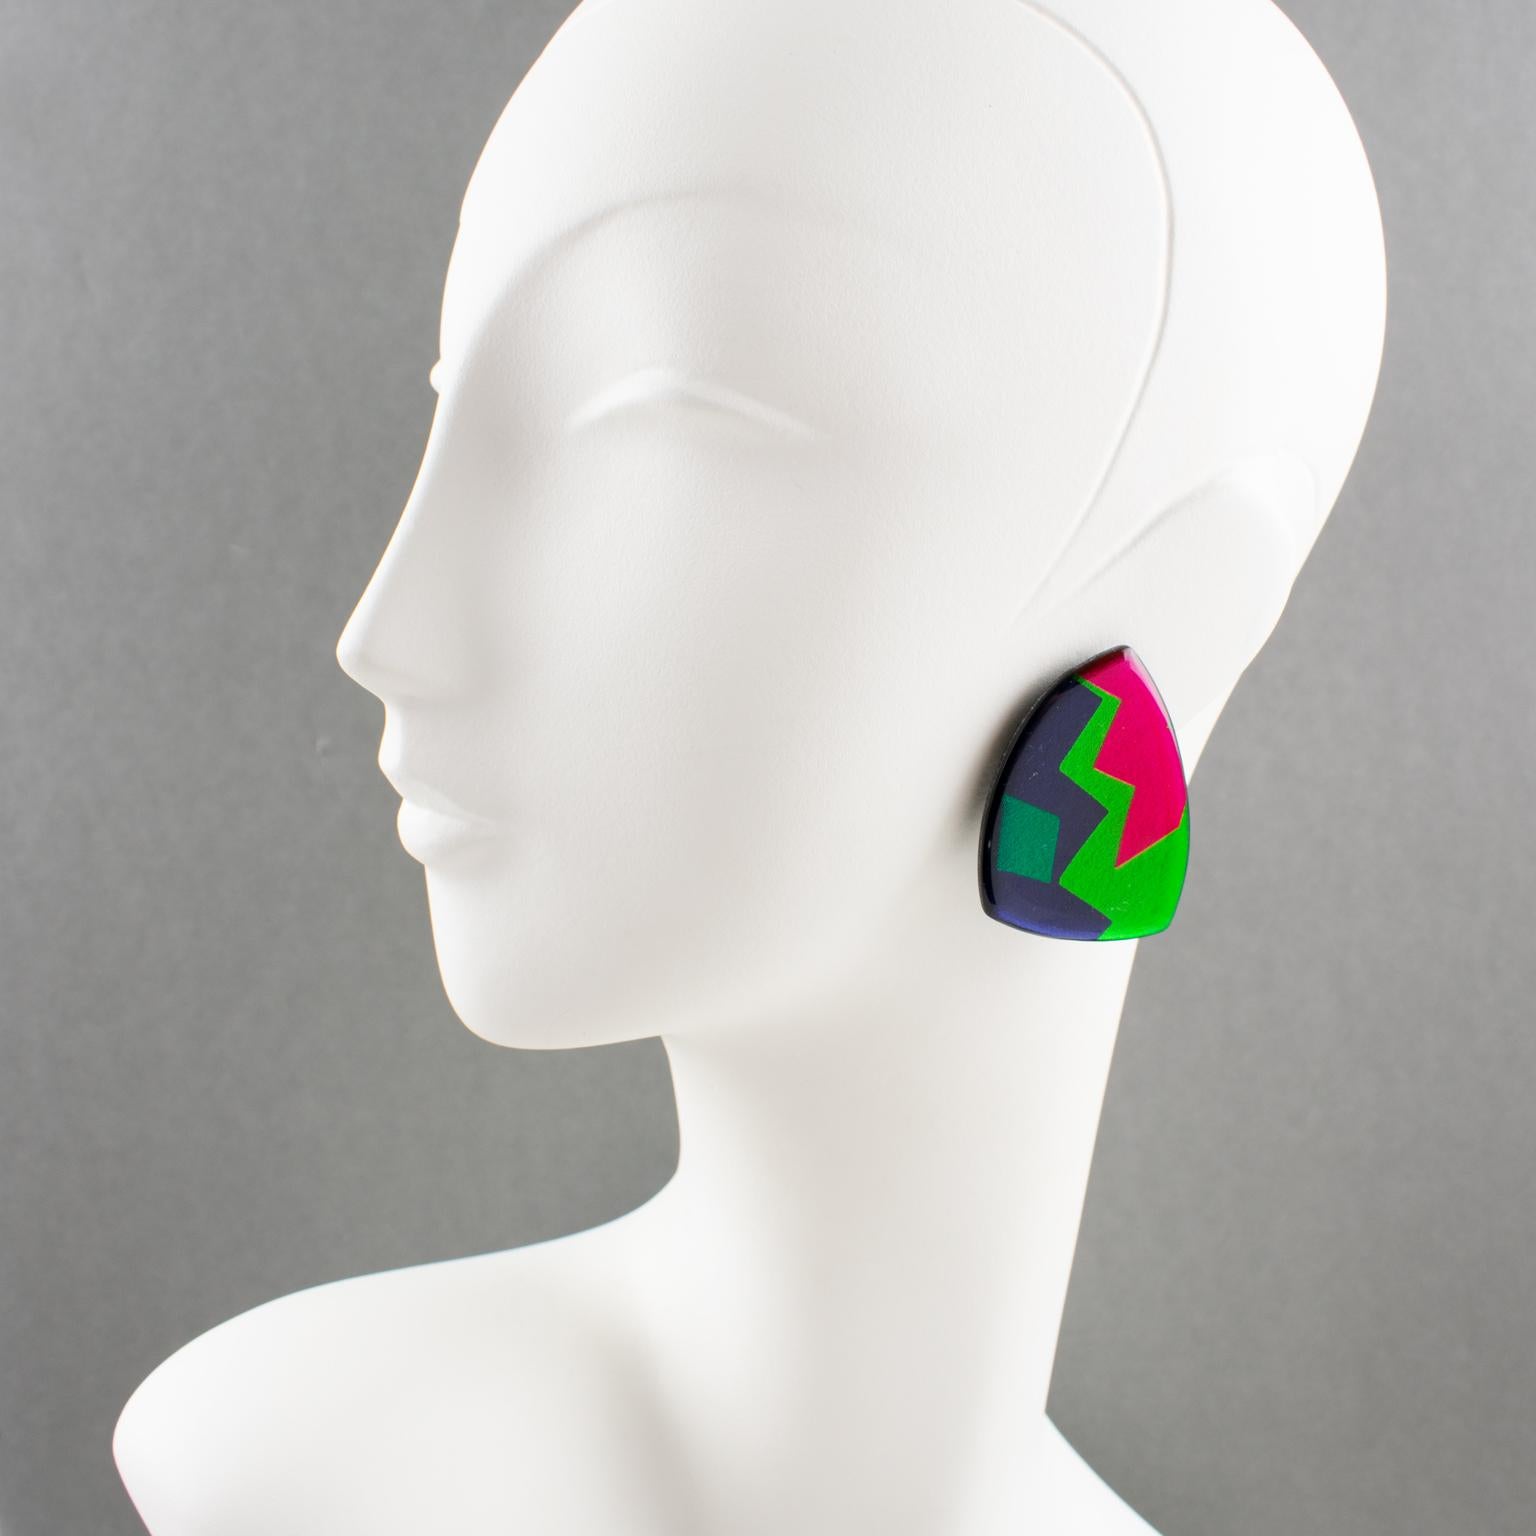 Schöne italienische Designer Studio Lucite oder Harz baumelnden Clip-on-Ohrringe. Geometrisches Dreiecksdesign mit smaragdgrünen, grasgrünen, pinkfarbenen und kobaltblauen Farben mit Spiegeleffekt und strukturiertem Muster. Ein absolut auffälliges